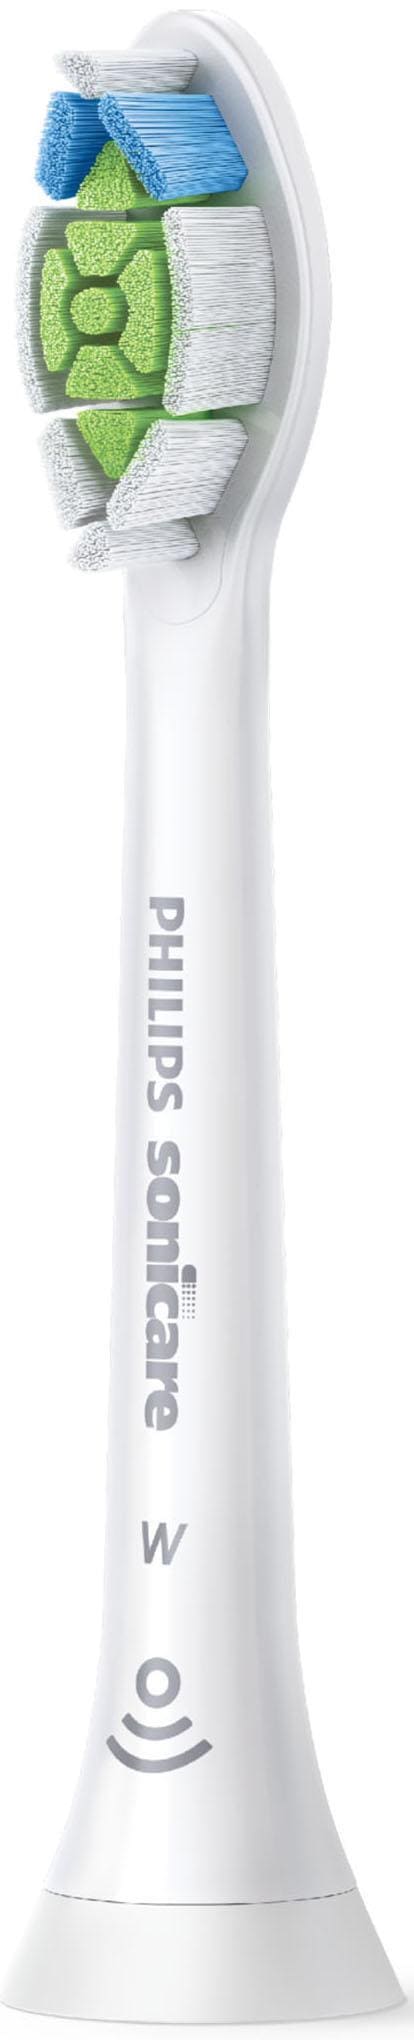 Shop Philips für Zähne »Optimal OTTO White weiße Aufsteckbürsten Online besonderes Standard«, im Sonicare